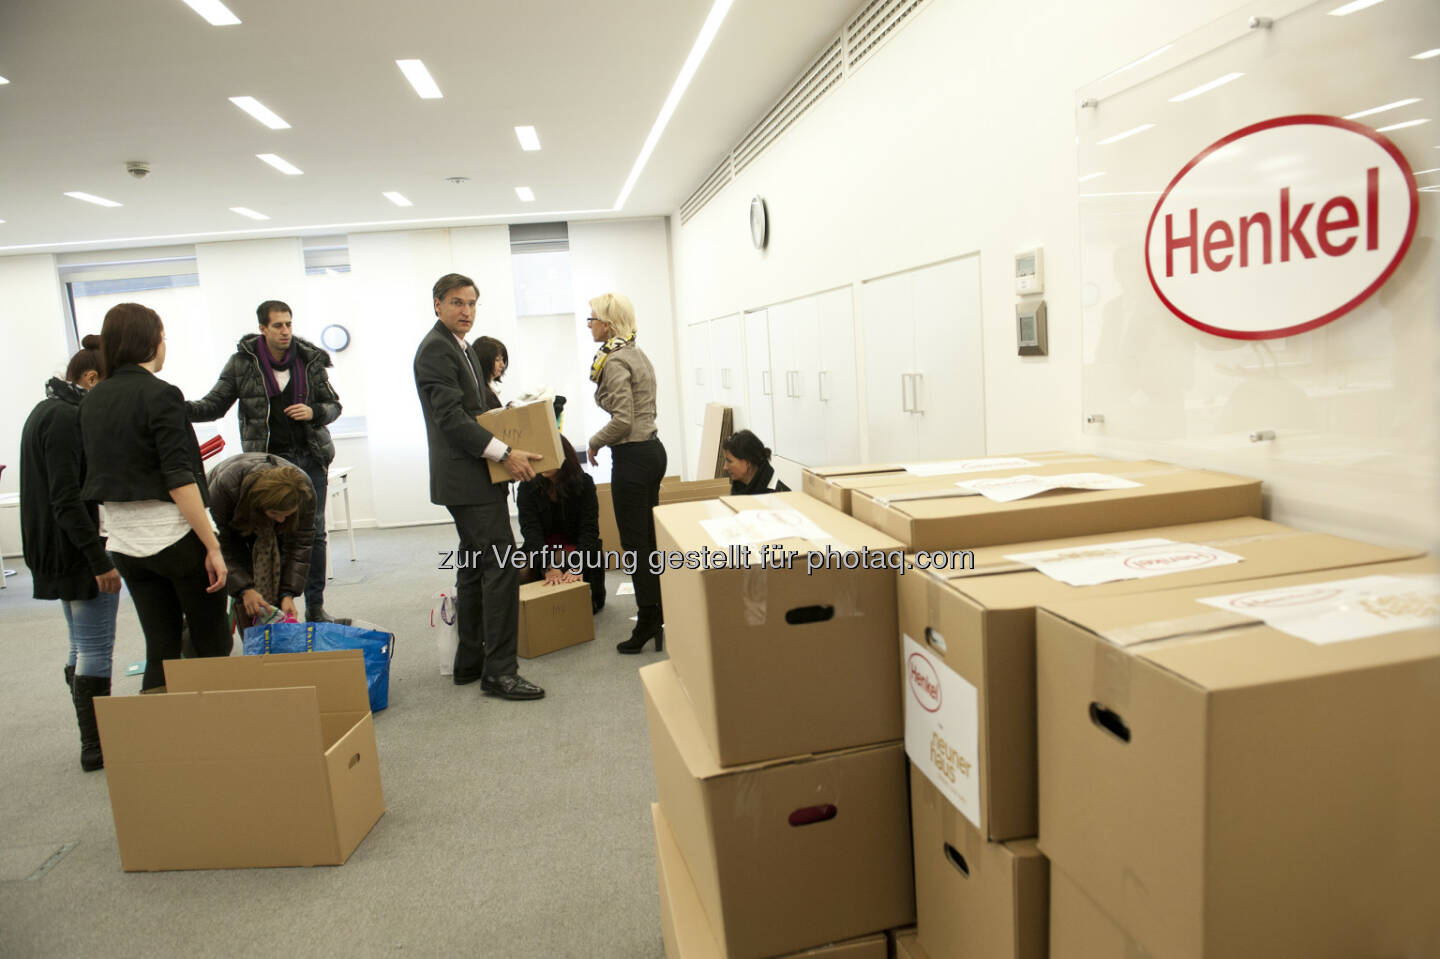 Henkel Central Eastern Europe: Henkel CEE unterstützt soziale Projekte das ganze Jahr hindurch: Henkel-Mitarbeiter sammeln am „Corporate Volunteering Day“ Waren des täglichen Bedarfs und spenden diese an karitative Einrichtungen